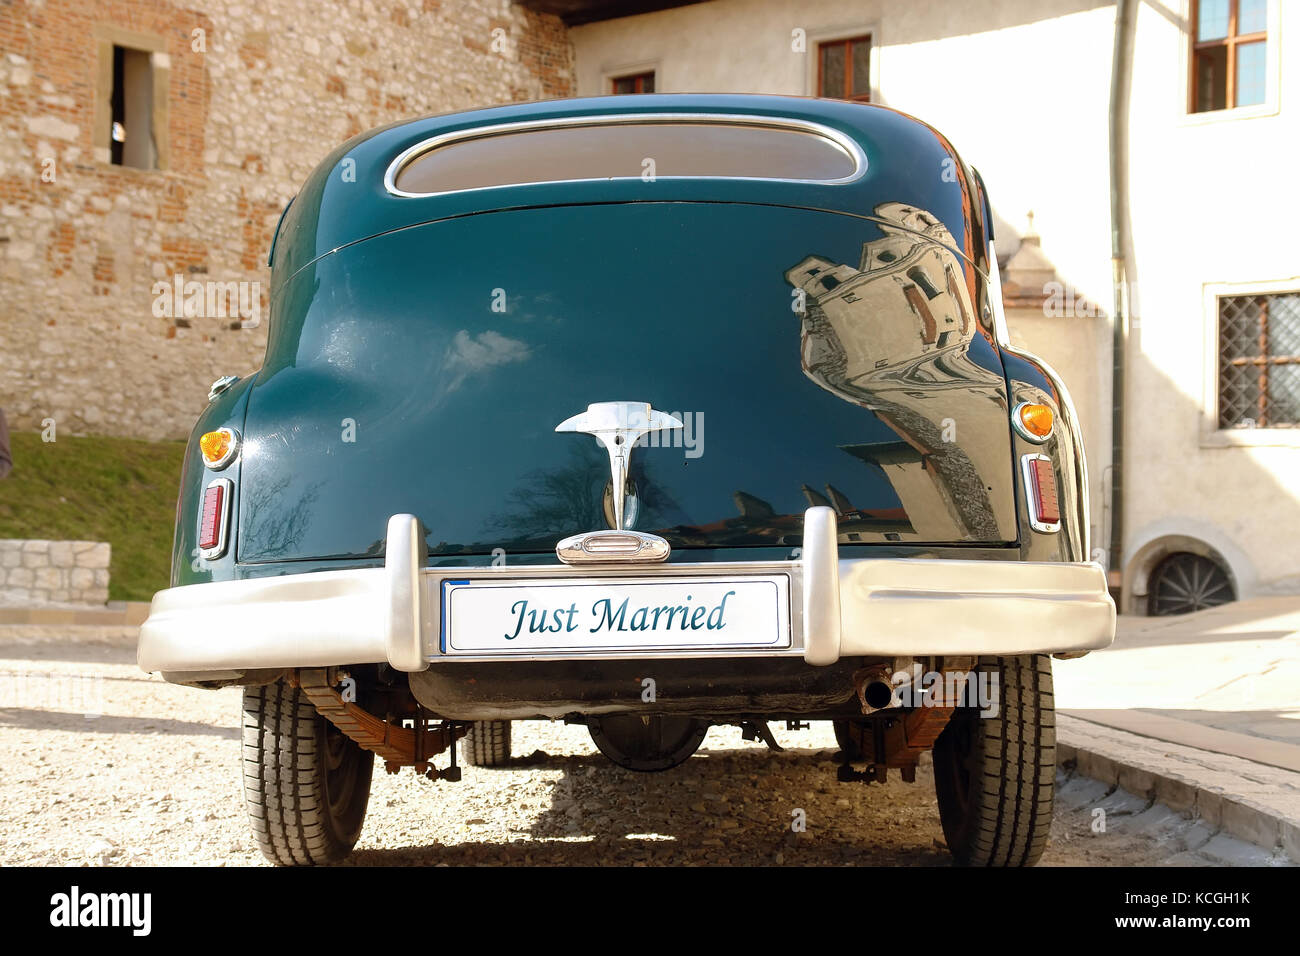 L'arrière de la voiture de mariage rétro vert foncé avec la plaque d'immatriculation just married Banque D'Images